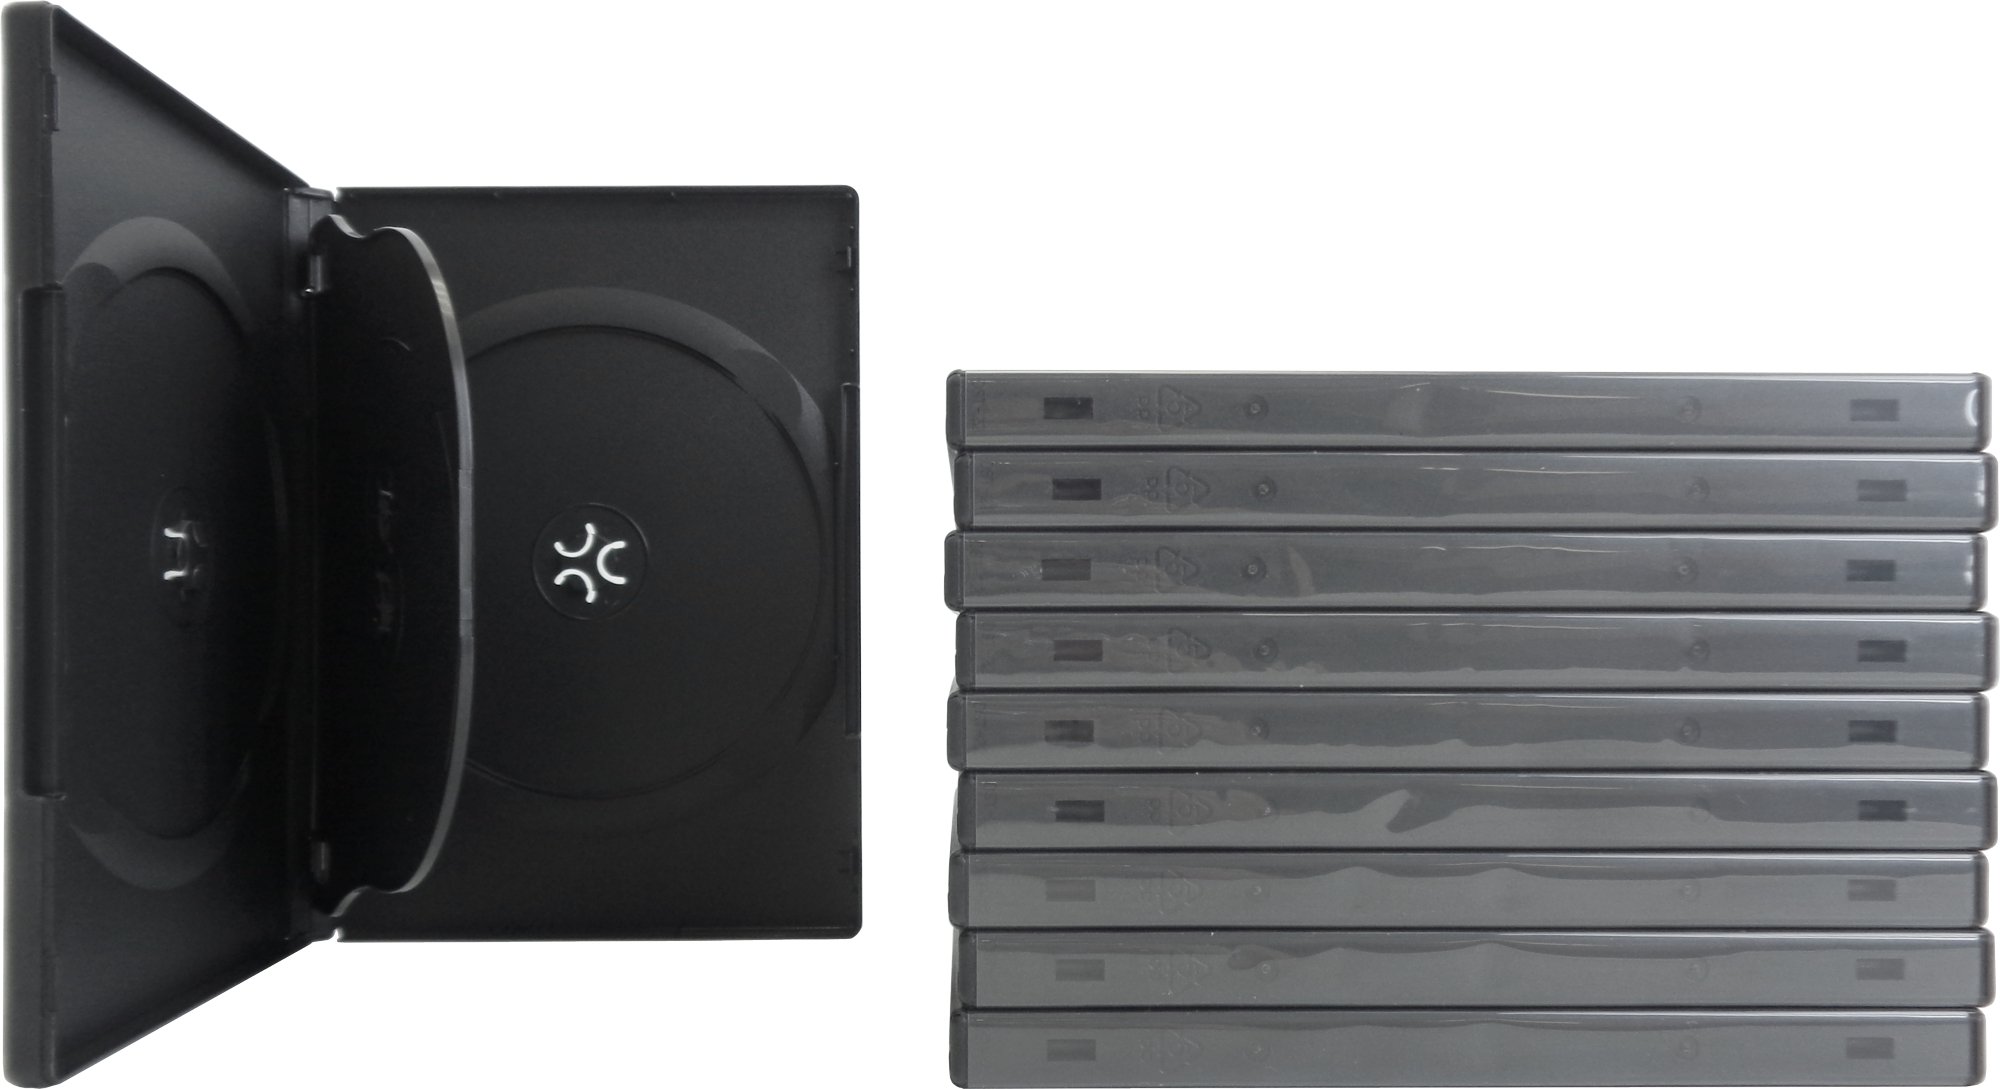 SquareDealOnline - DV4R14BKWT - Standard 14mm DVD Cases - 4 Disc Capacity - Black - (10 Pack)